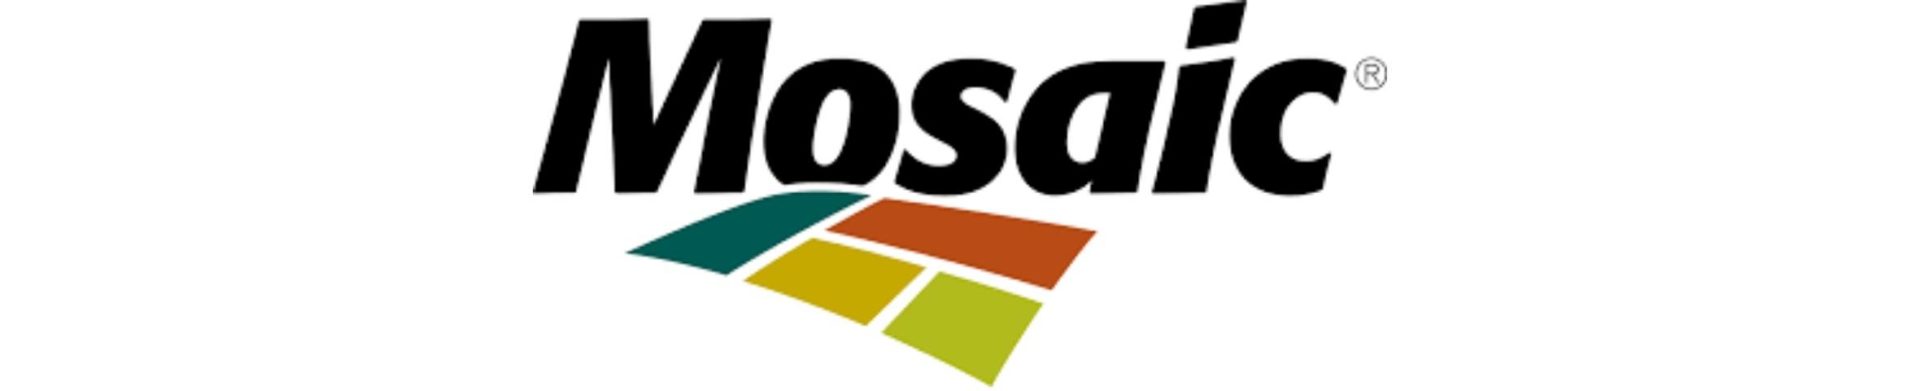 Tbe Mosaic Company logo